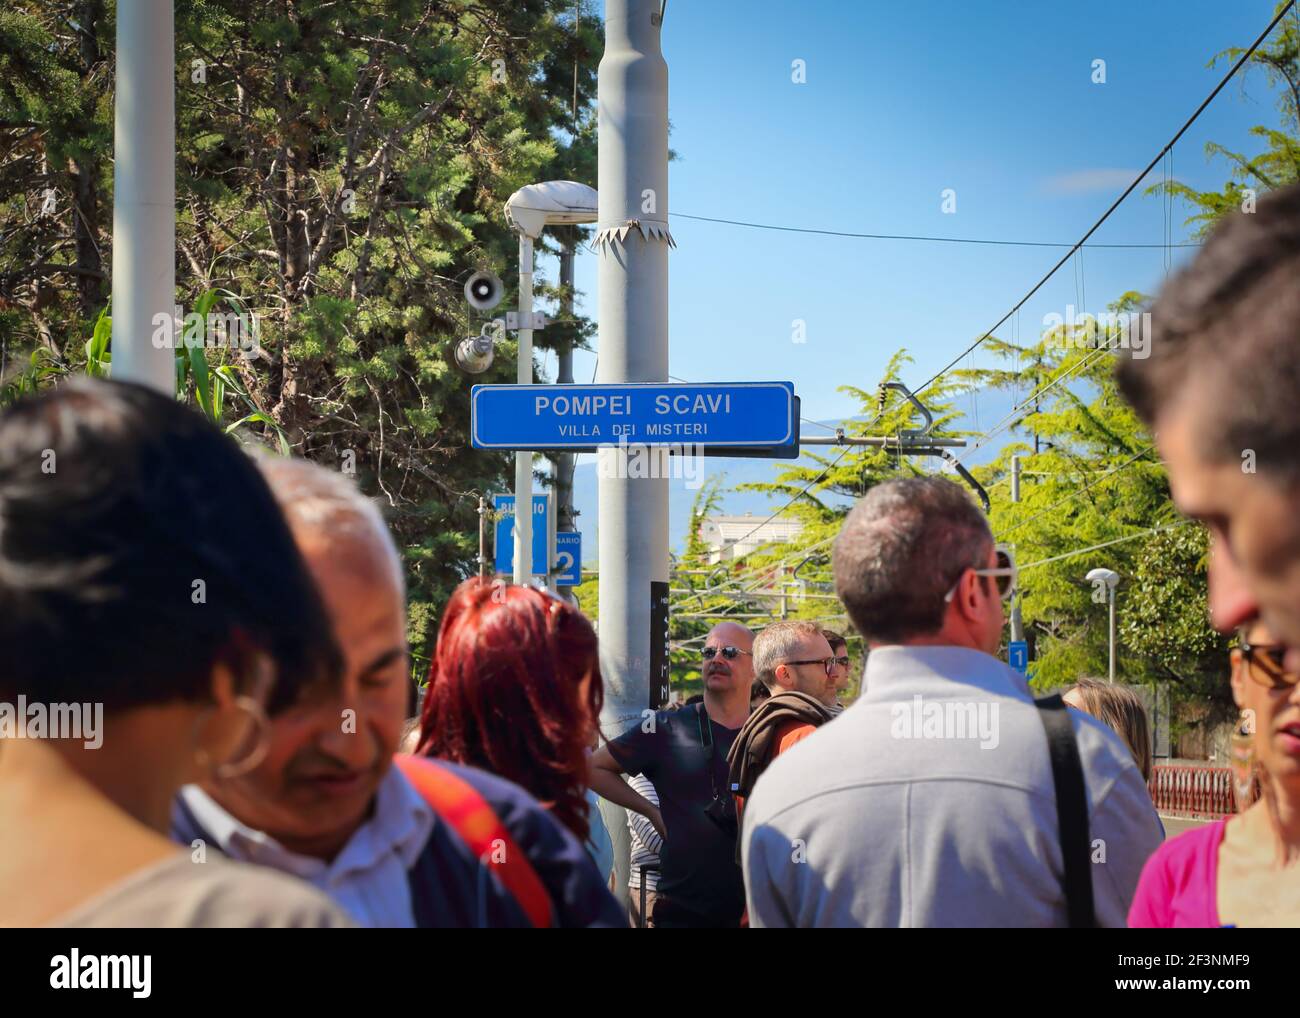 Plataforma llena de gente con señal en la estación Pompei Scavi para Villa dei Misteri, Pompeya, Monte Vesubio, Nápoles, Italia Foto de stock